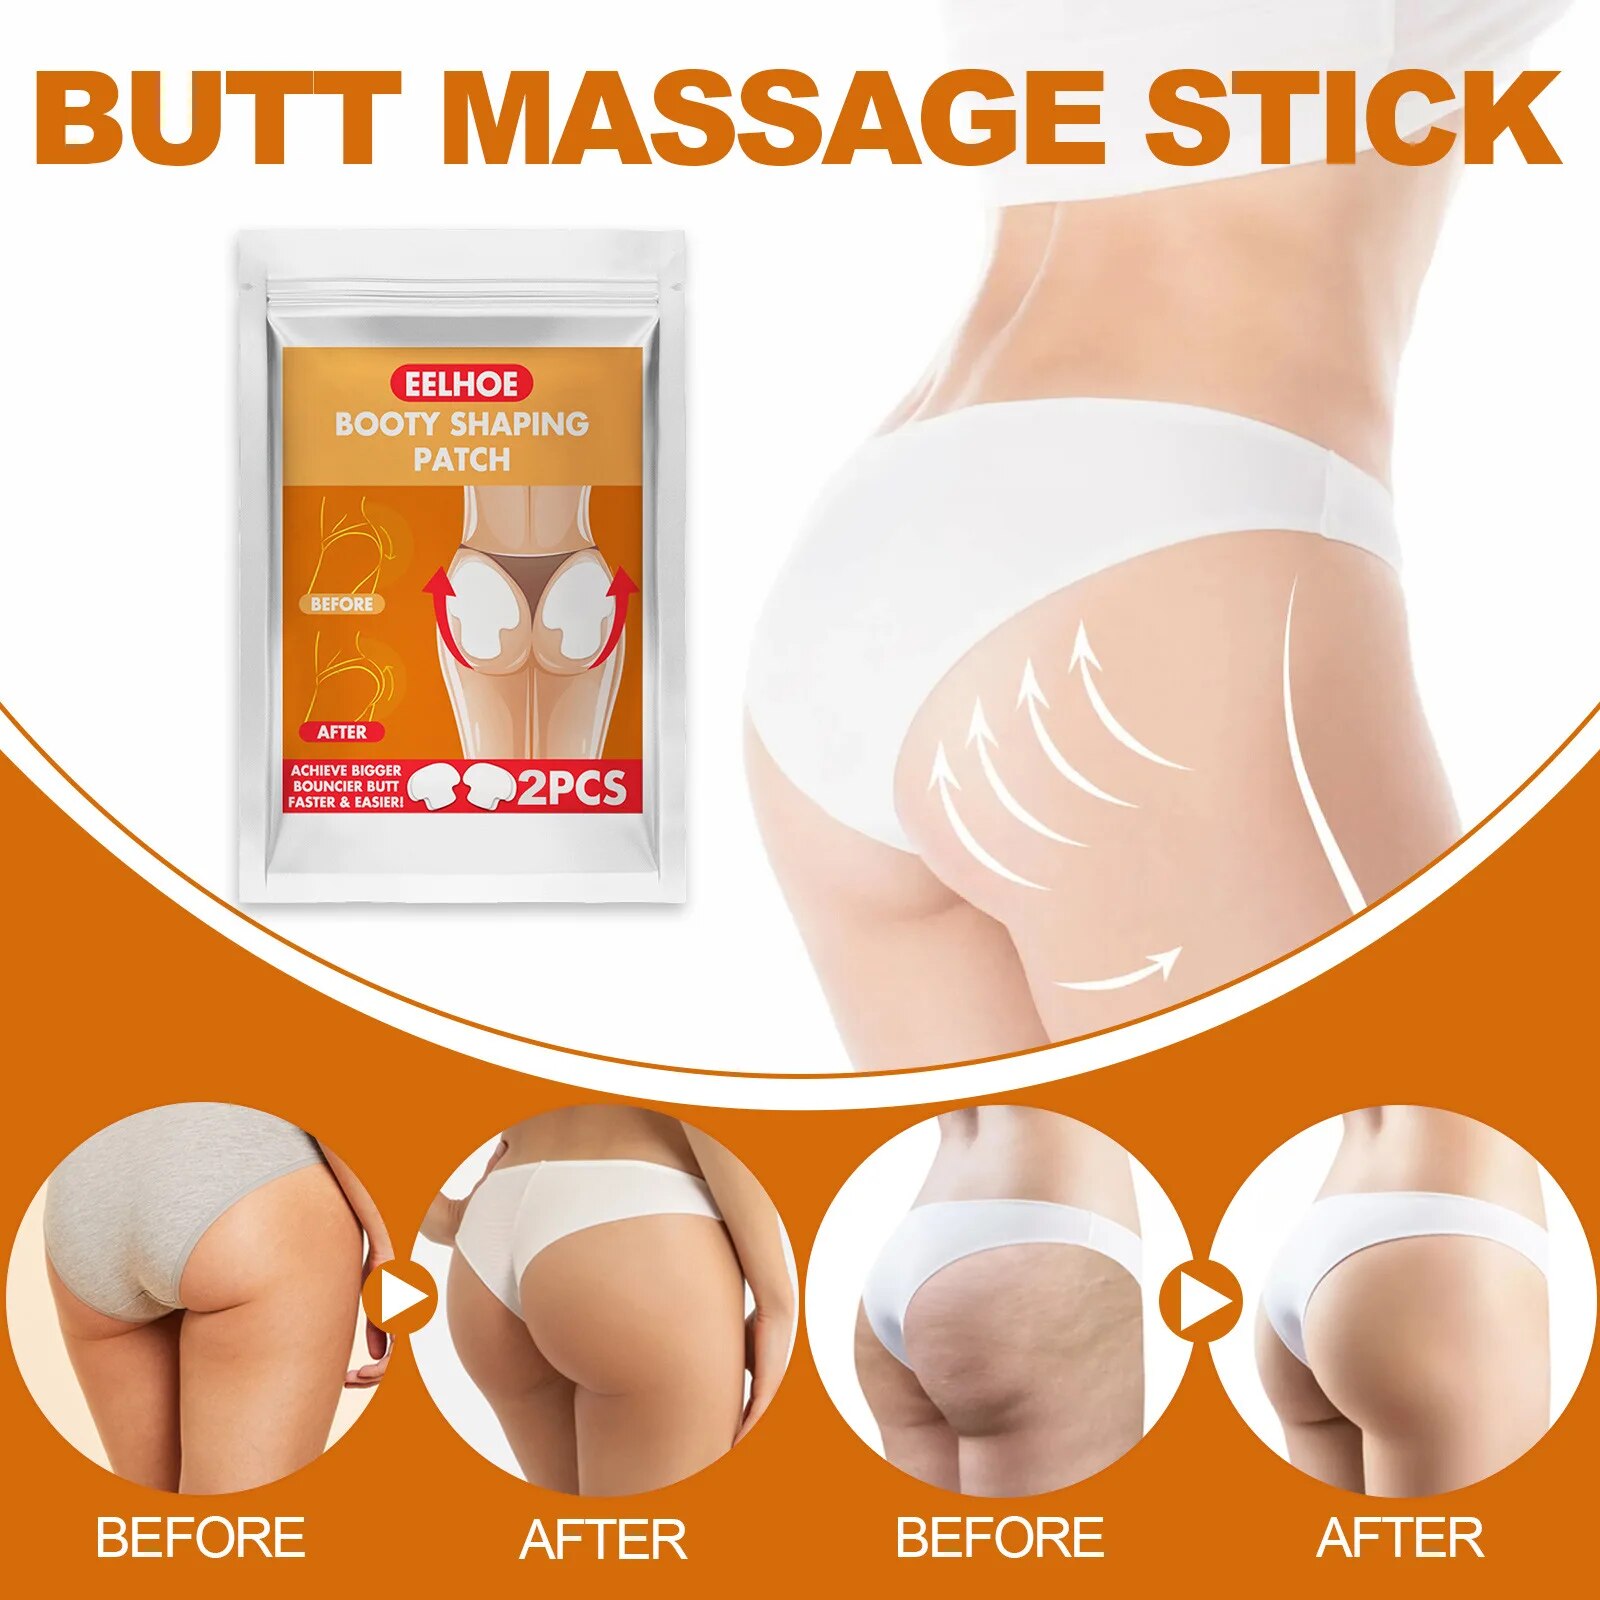 Buttock-Growth-Patch-Prevent-Sagging-Butt-Firming-Shaping-Tightening-Peach-Buttock-Sculpting-Bigger-Ass-Hip-Enlargement.jpg_ (5)